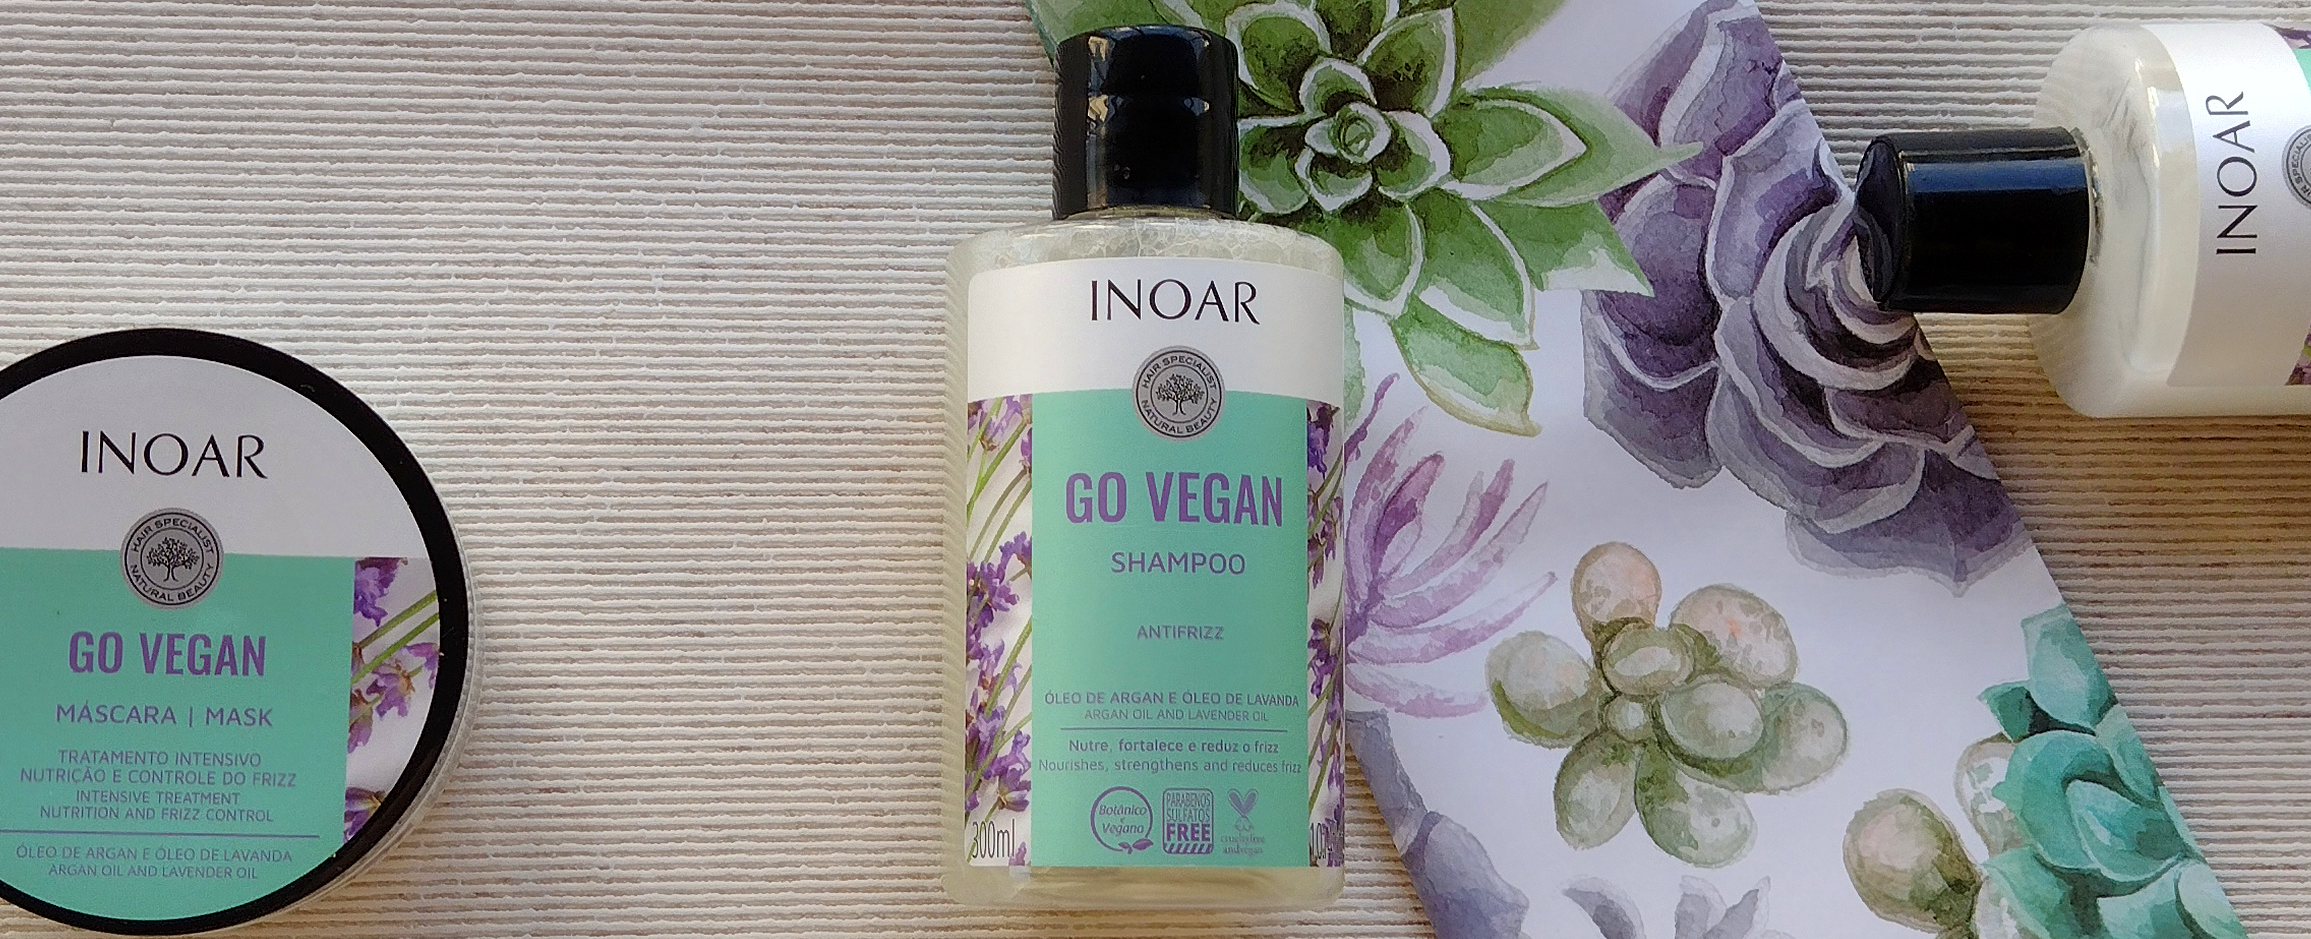 Shampoo Inoar é bom - Resenha do Go Vegan Antifrizz